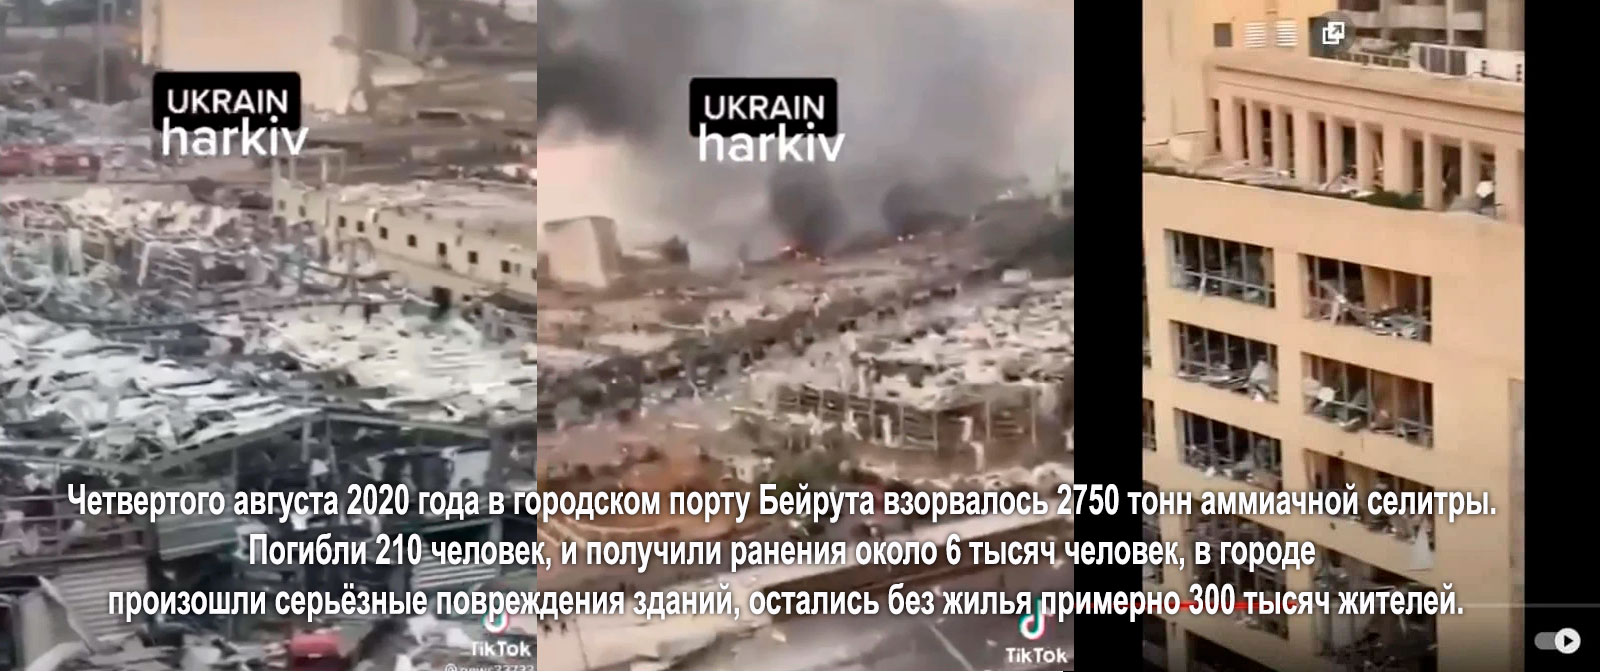  Харьков превратился в развалины после множества атак российской армии! Fakeha10